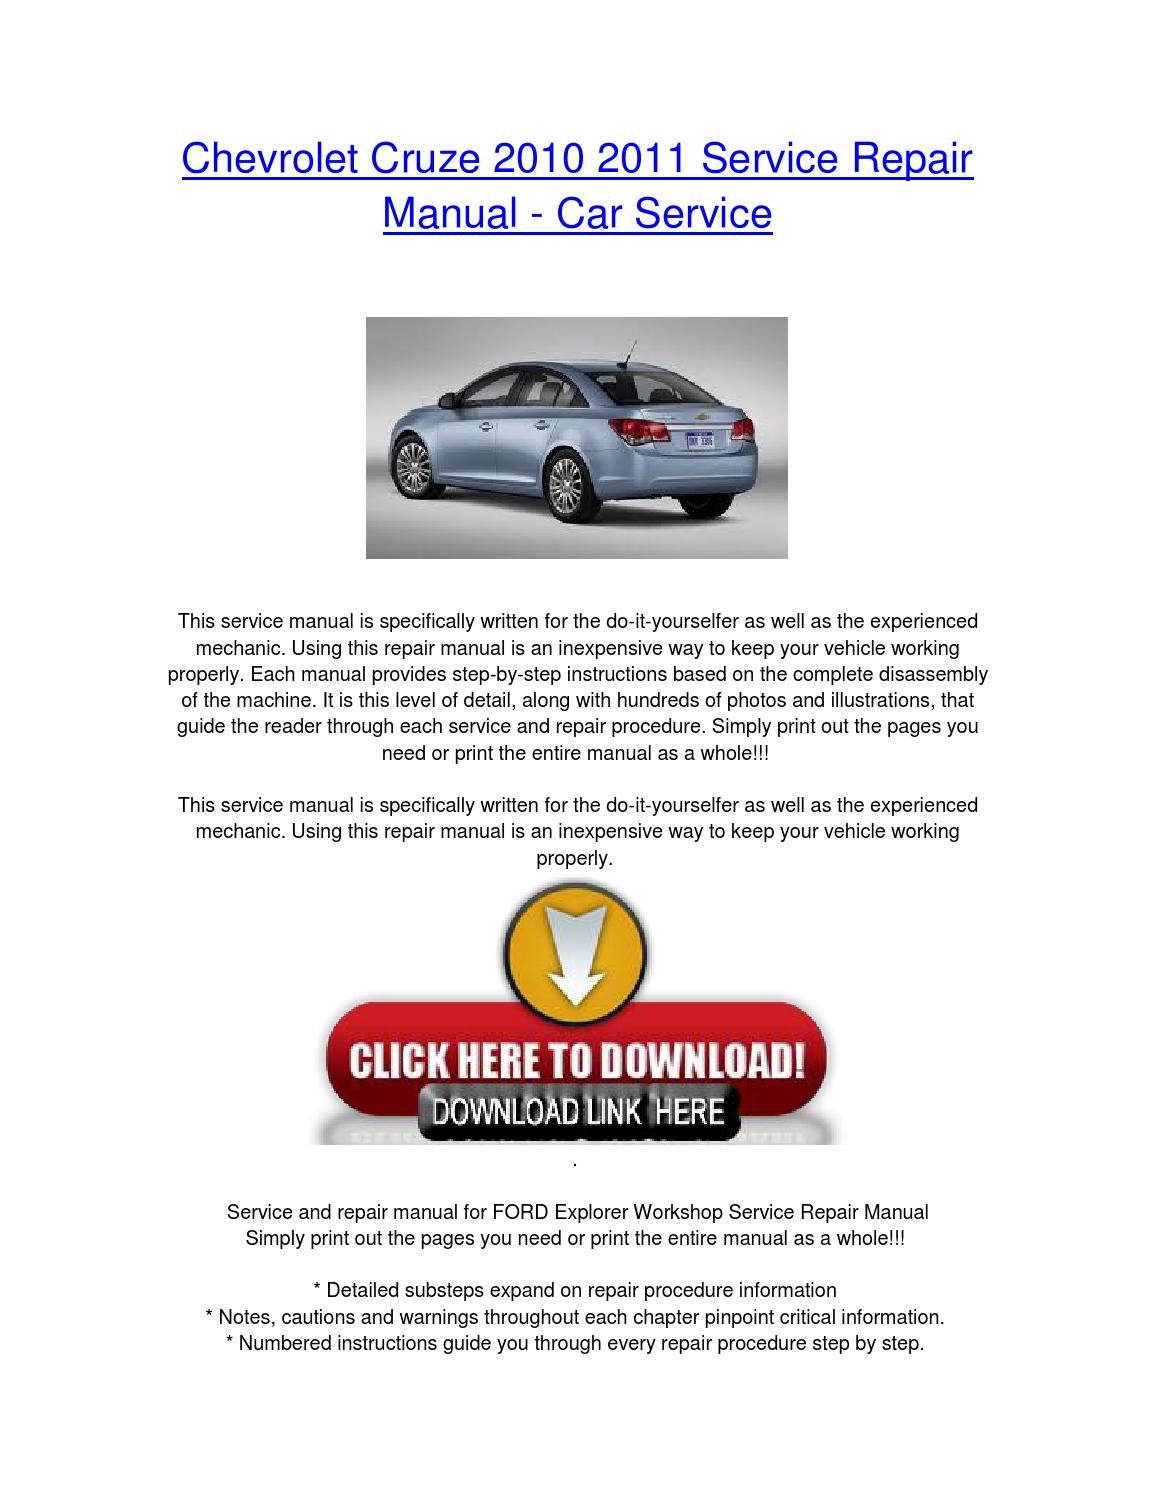 Ford Explorer 2010 Repair Manual Download